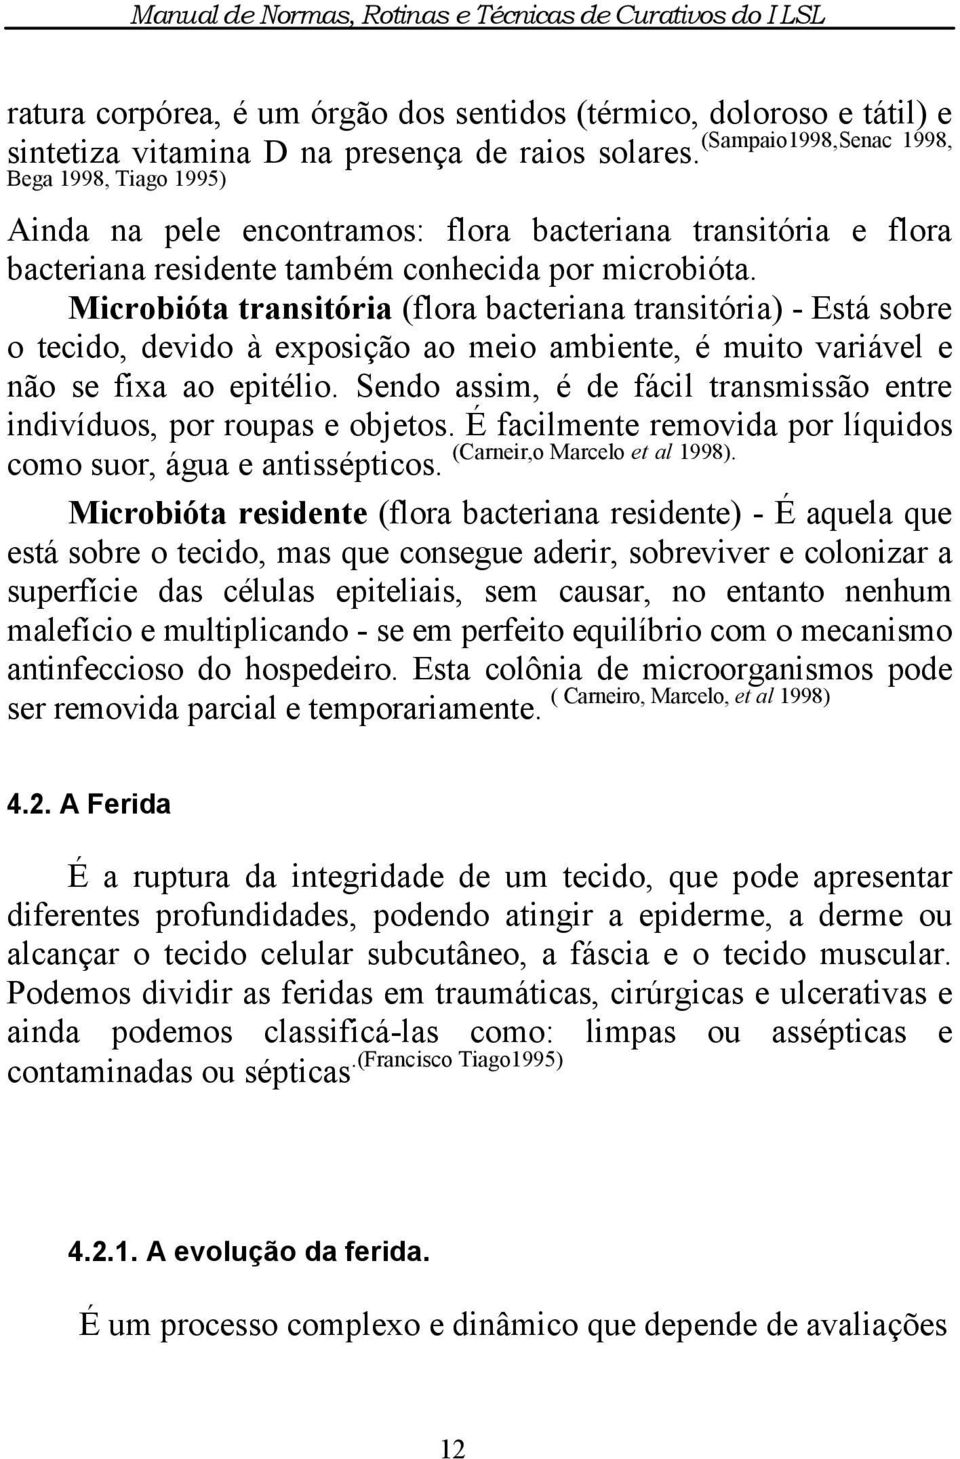 Microbióta transitória (flora bacteriana transitória) - Está sobre o tecido, devido à exposição ao meio ambiente, é muito variável e não se fixa ao epitélio.